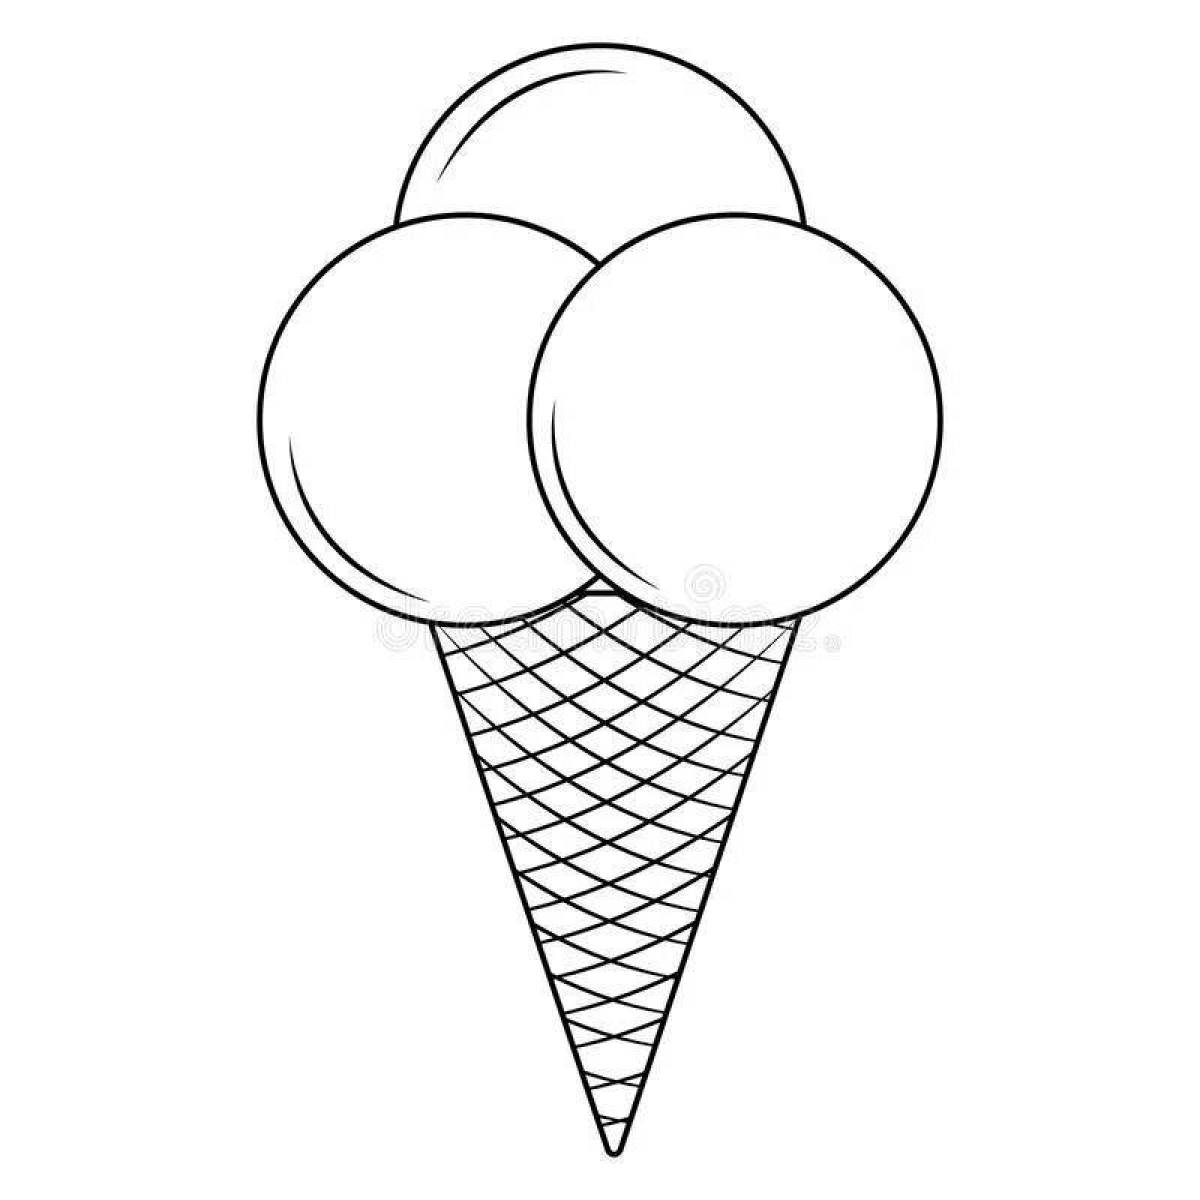 Стоковые векторные изображения по запросу Мороженое раскраска